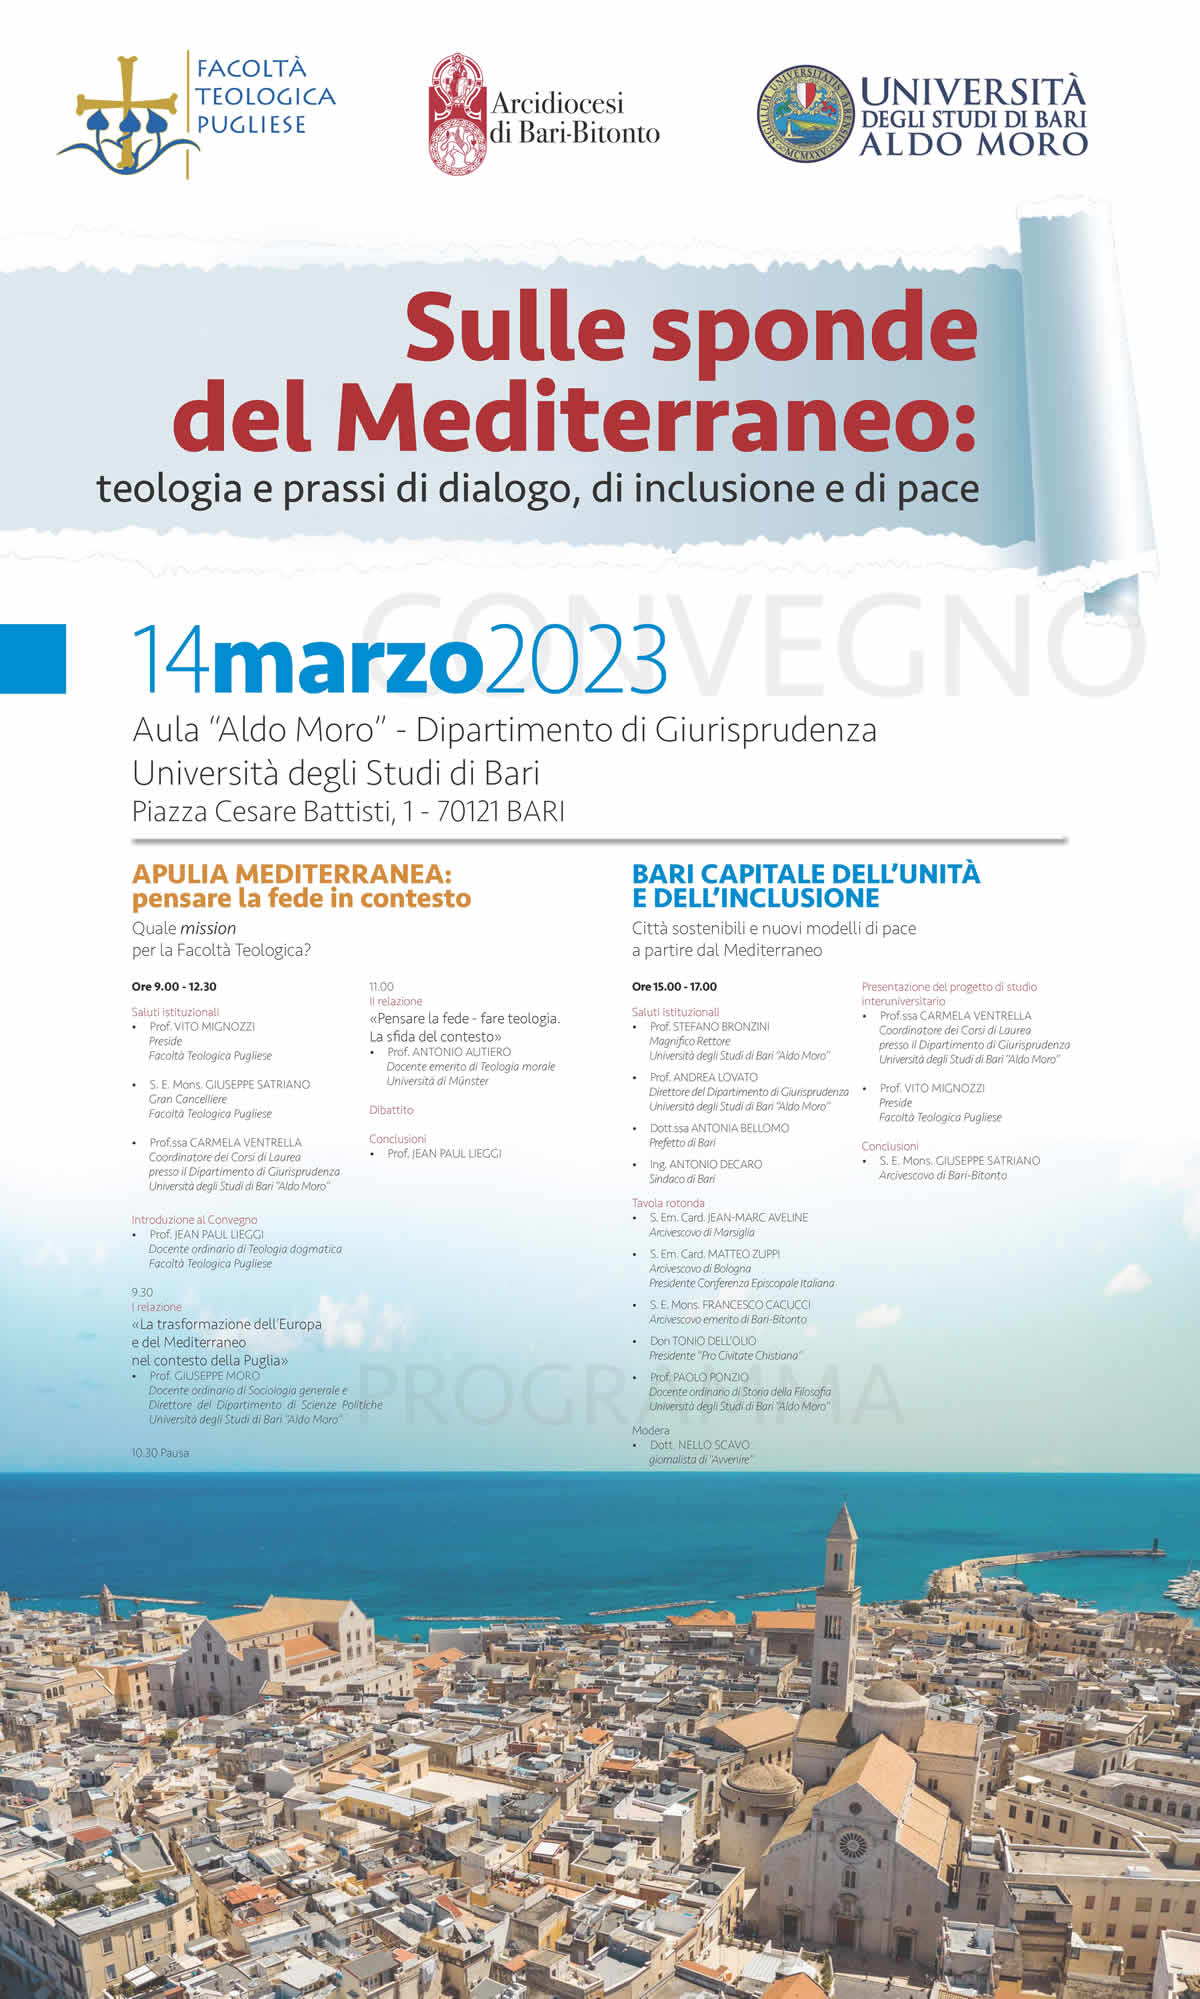 Sulle sponde del Mediterraneo: 
teologia e prassi di dialogo, di inclusione e di pace
14 marzo 2023